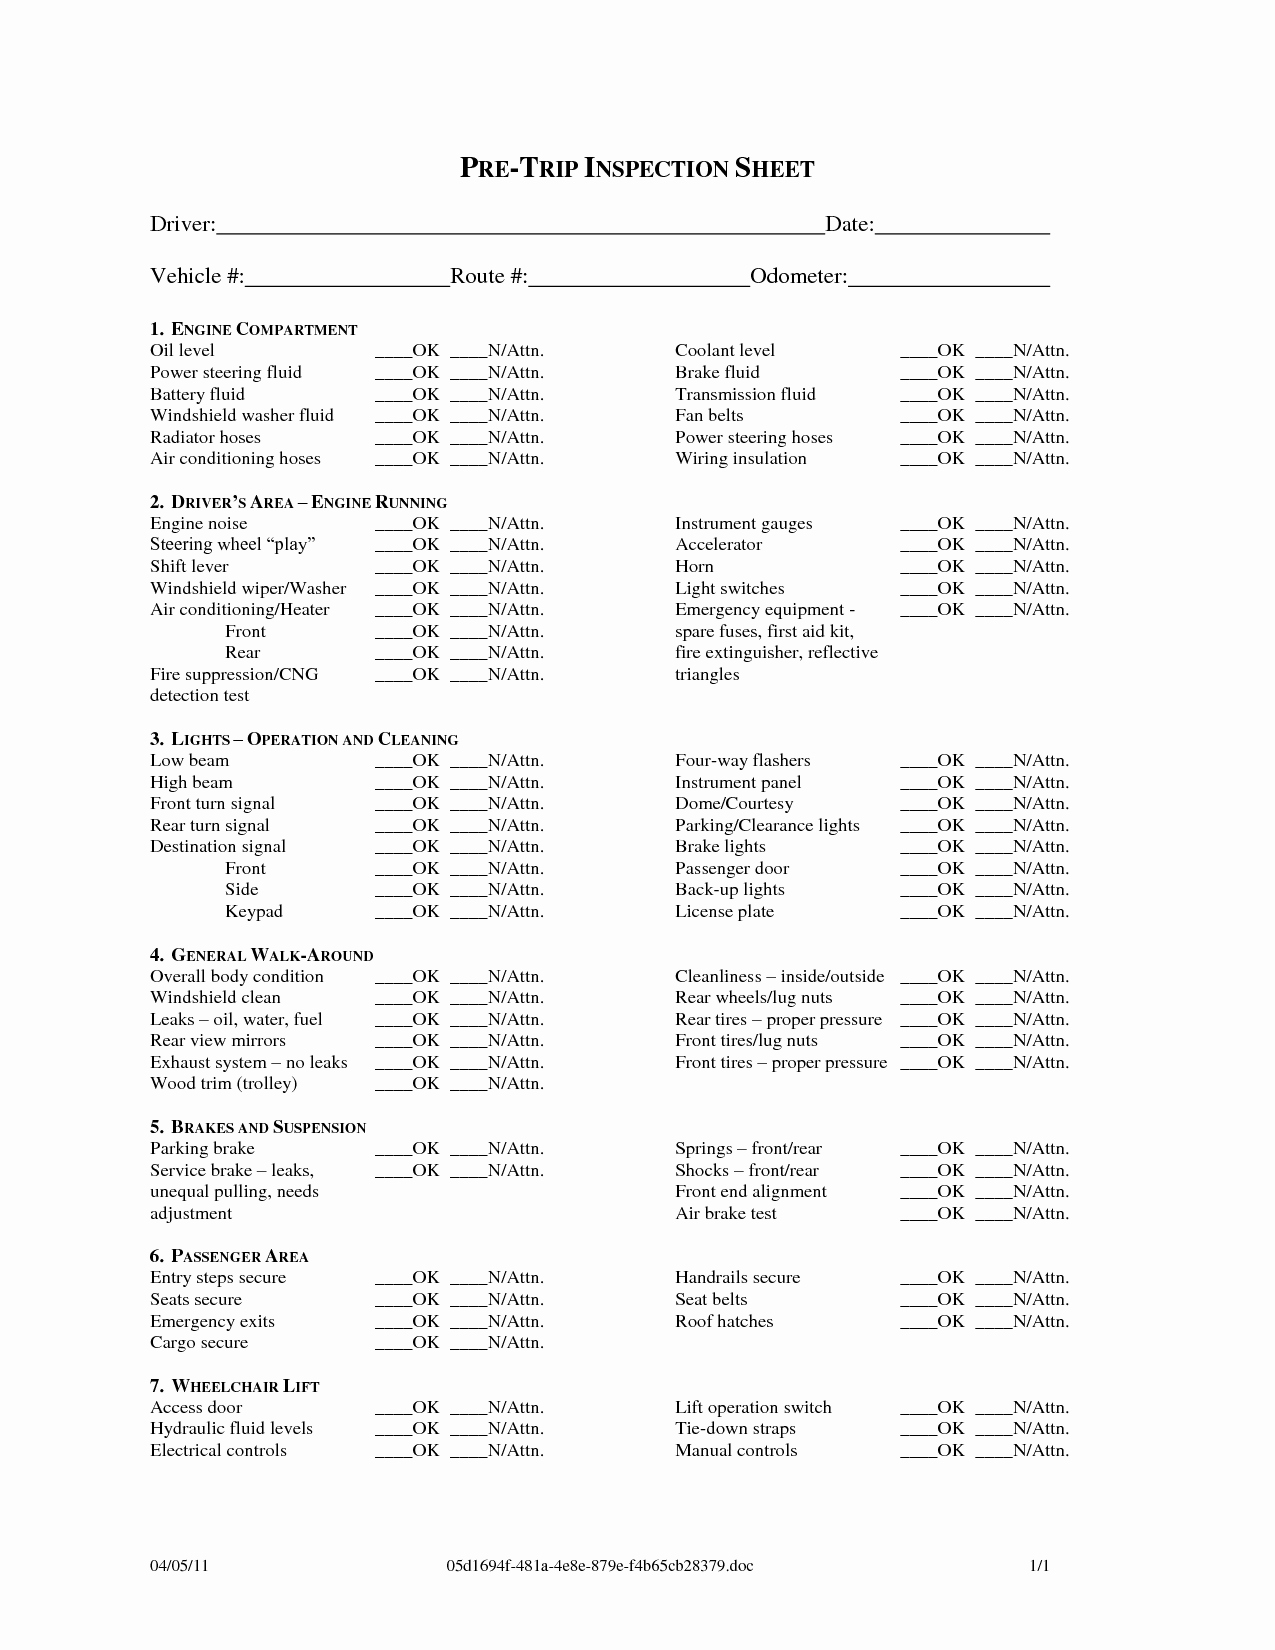 Trip Sheet for Truck Driver Fresh Free Cdl Pre Trip Checklist